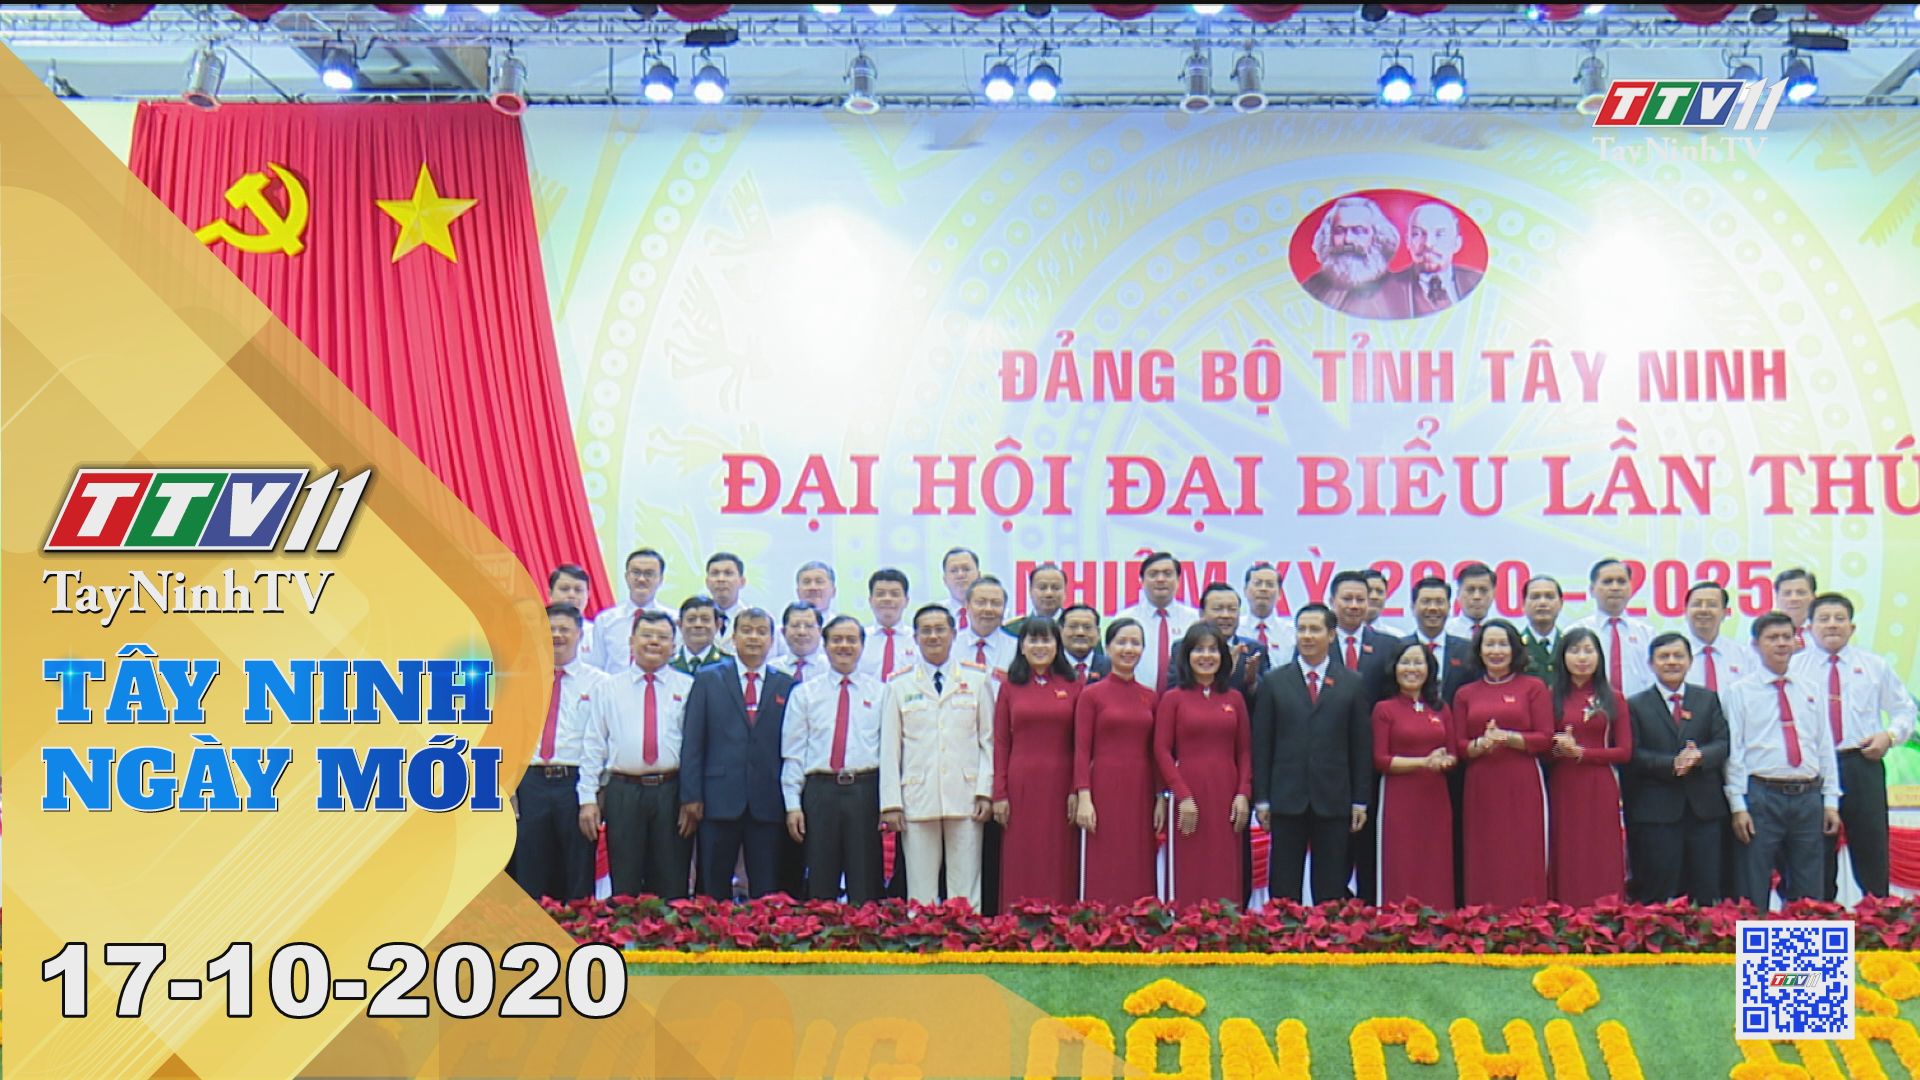 Tây Ninh Ngày Mới 17-10-2020 | Tin tức hôm nay | TayNinhTV 